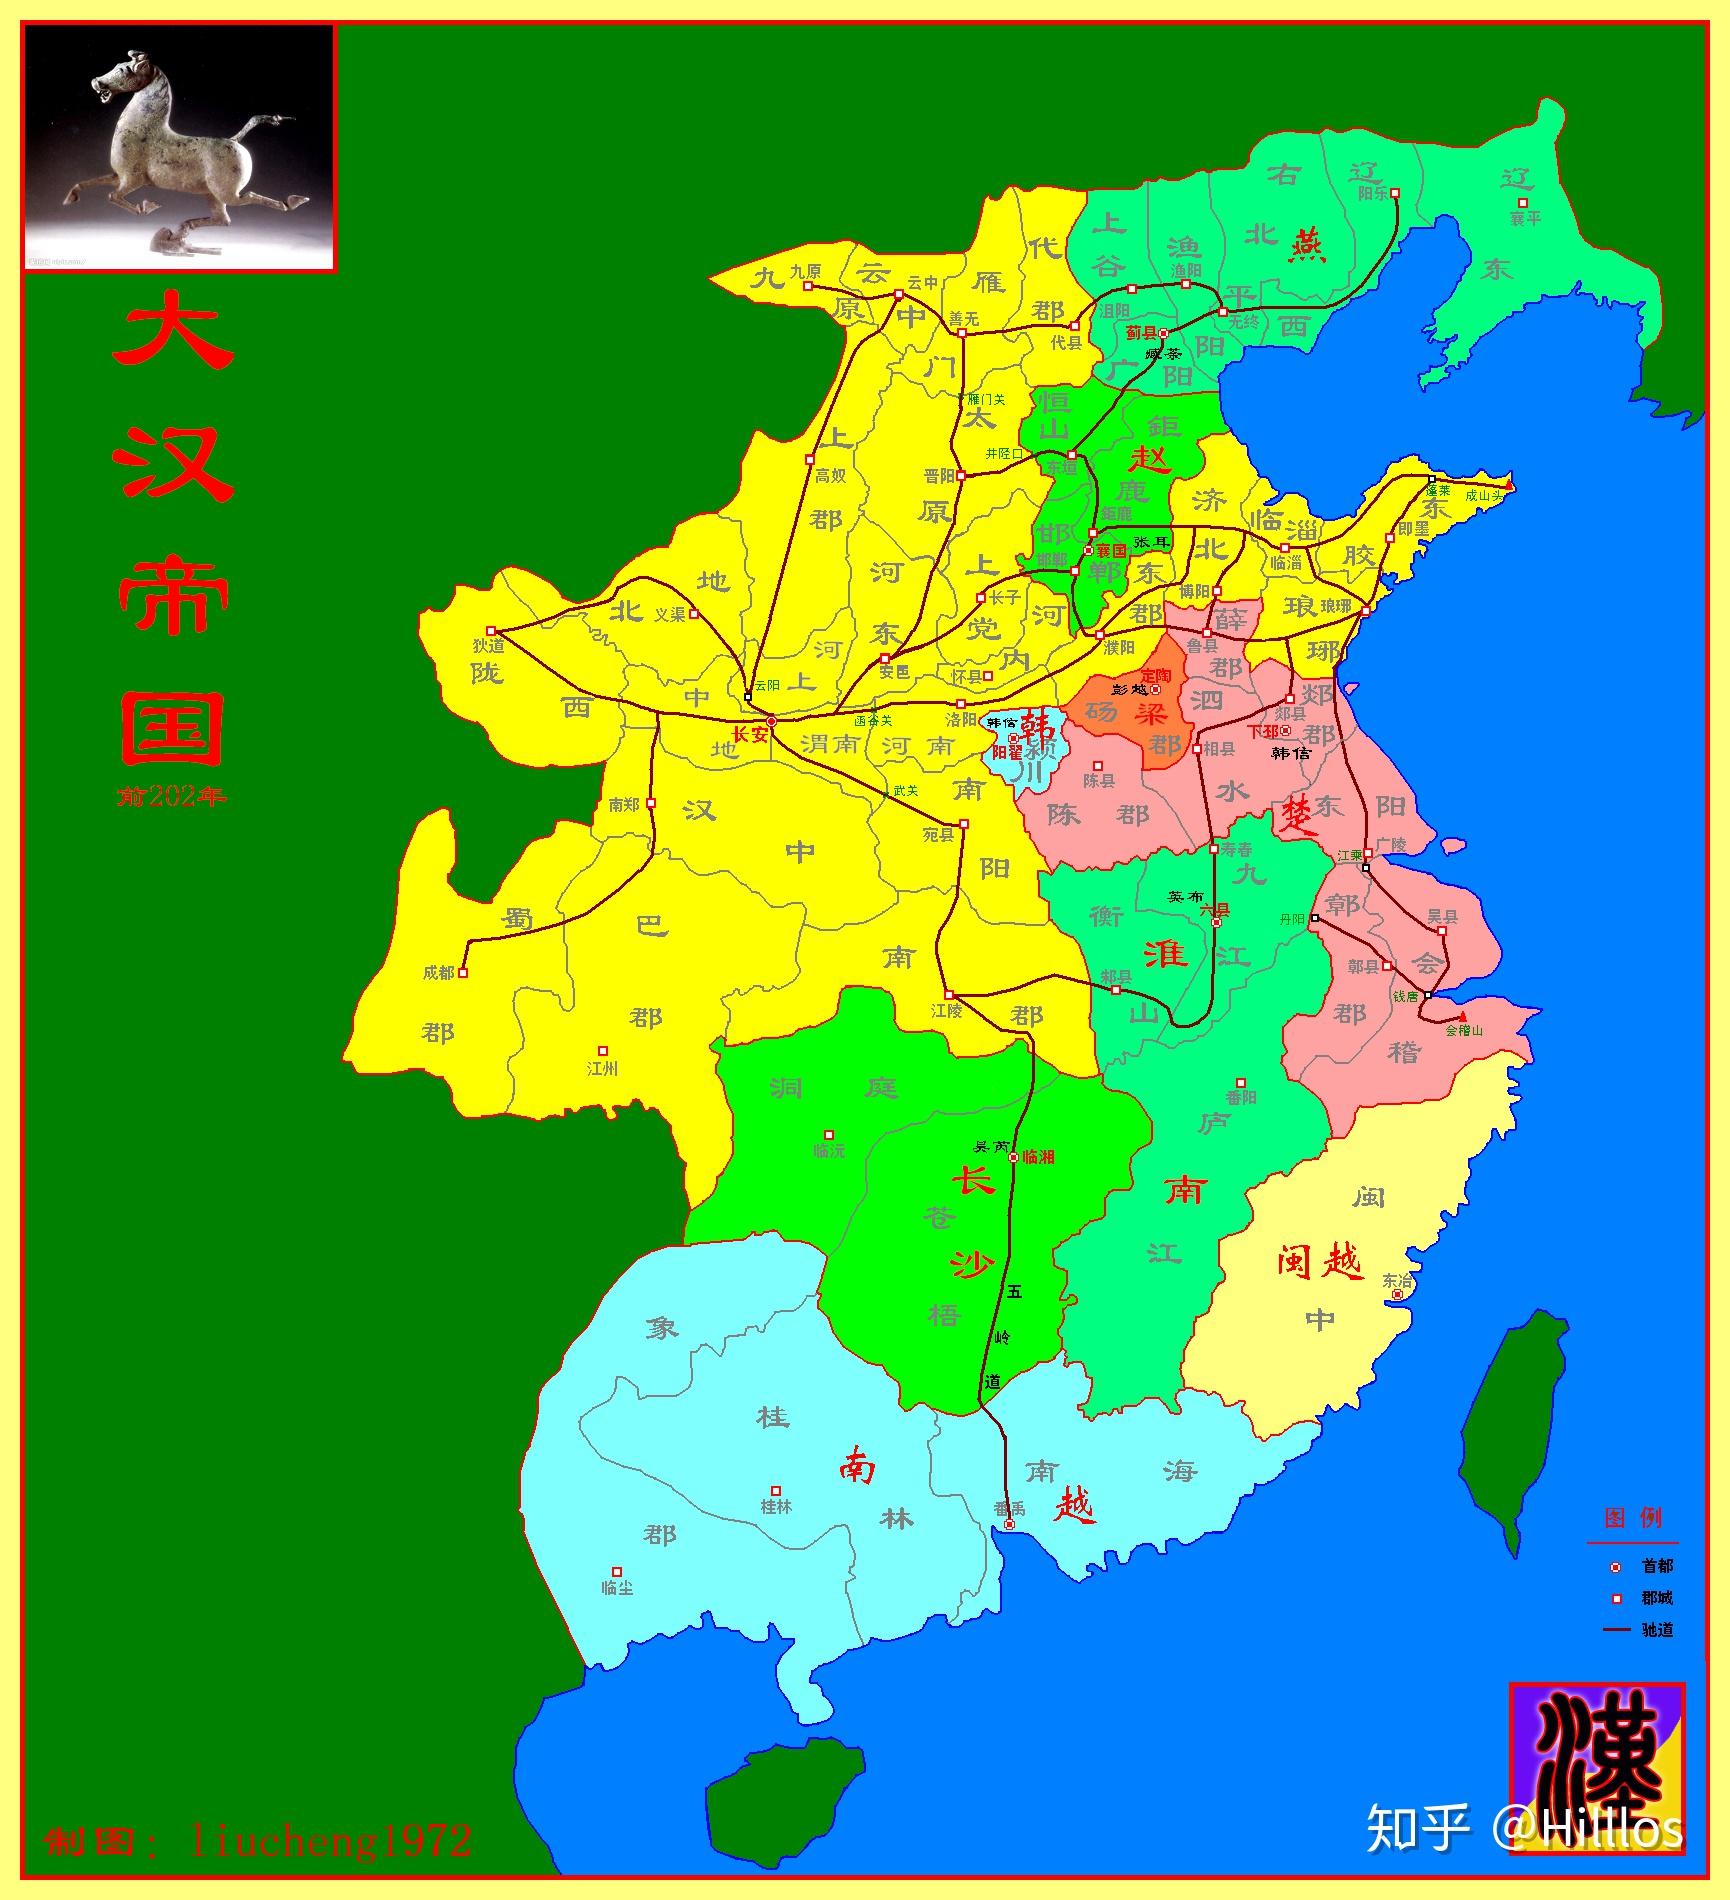 西汉初期地图汉初,匈奴乘中原战乱,越过秦蒙恬所筑长城,复与汉以战国